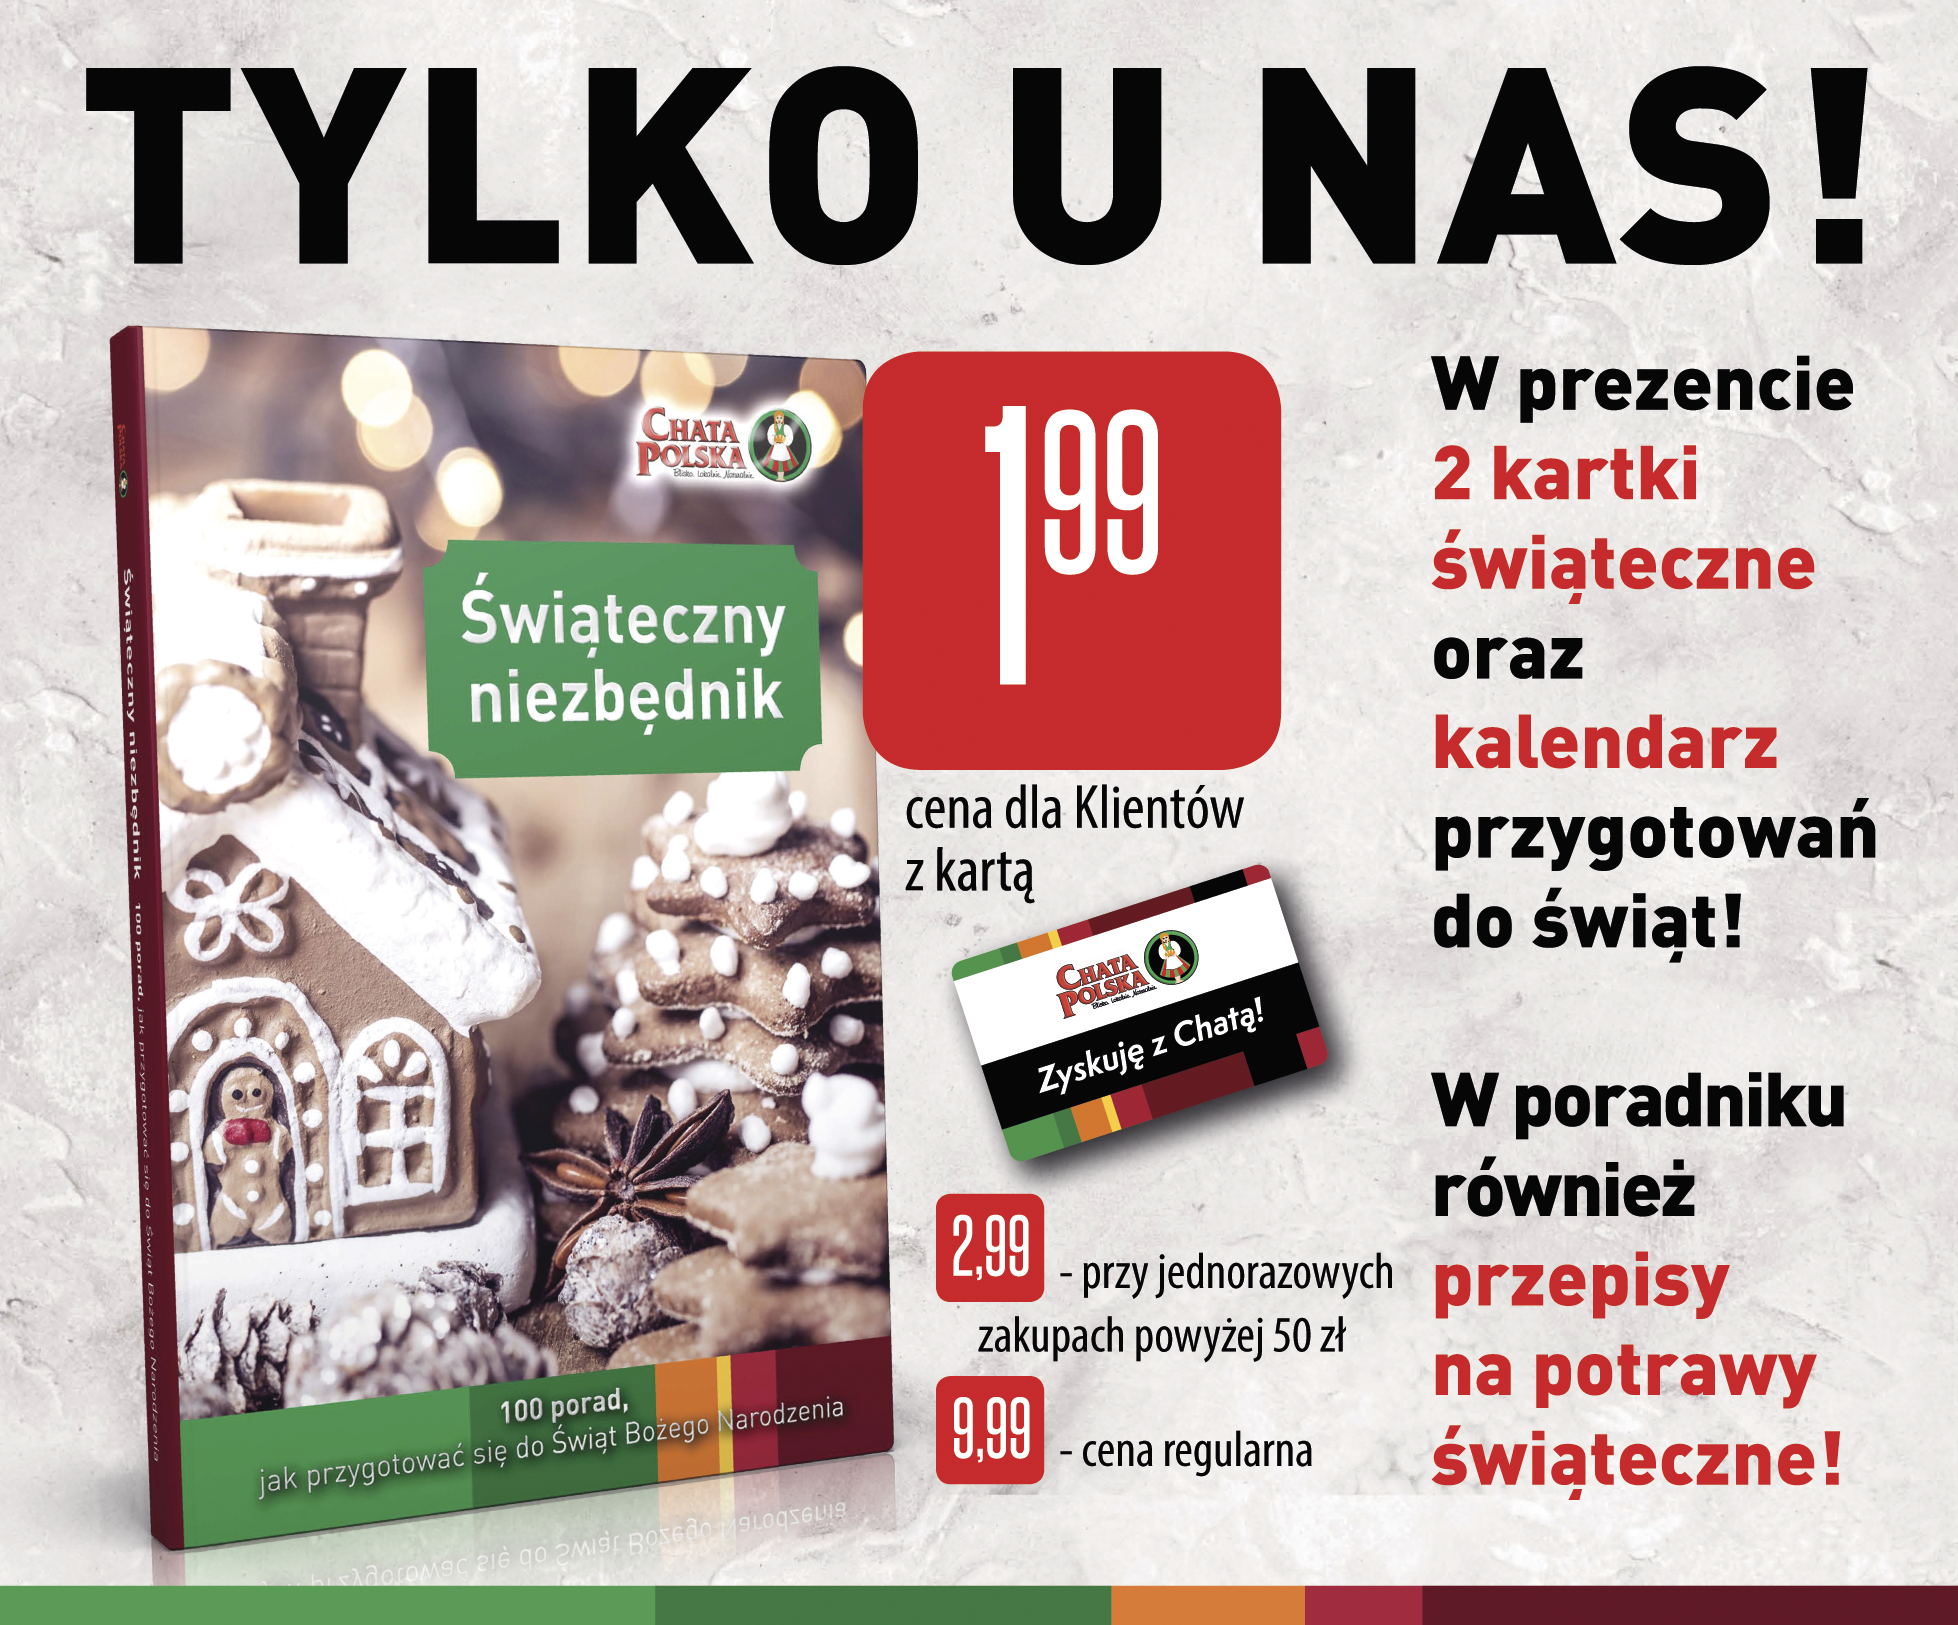 Świąteczny Niezbędnik Chaty Polskiej już dostępny